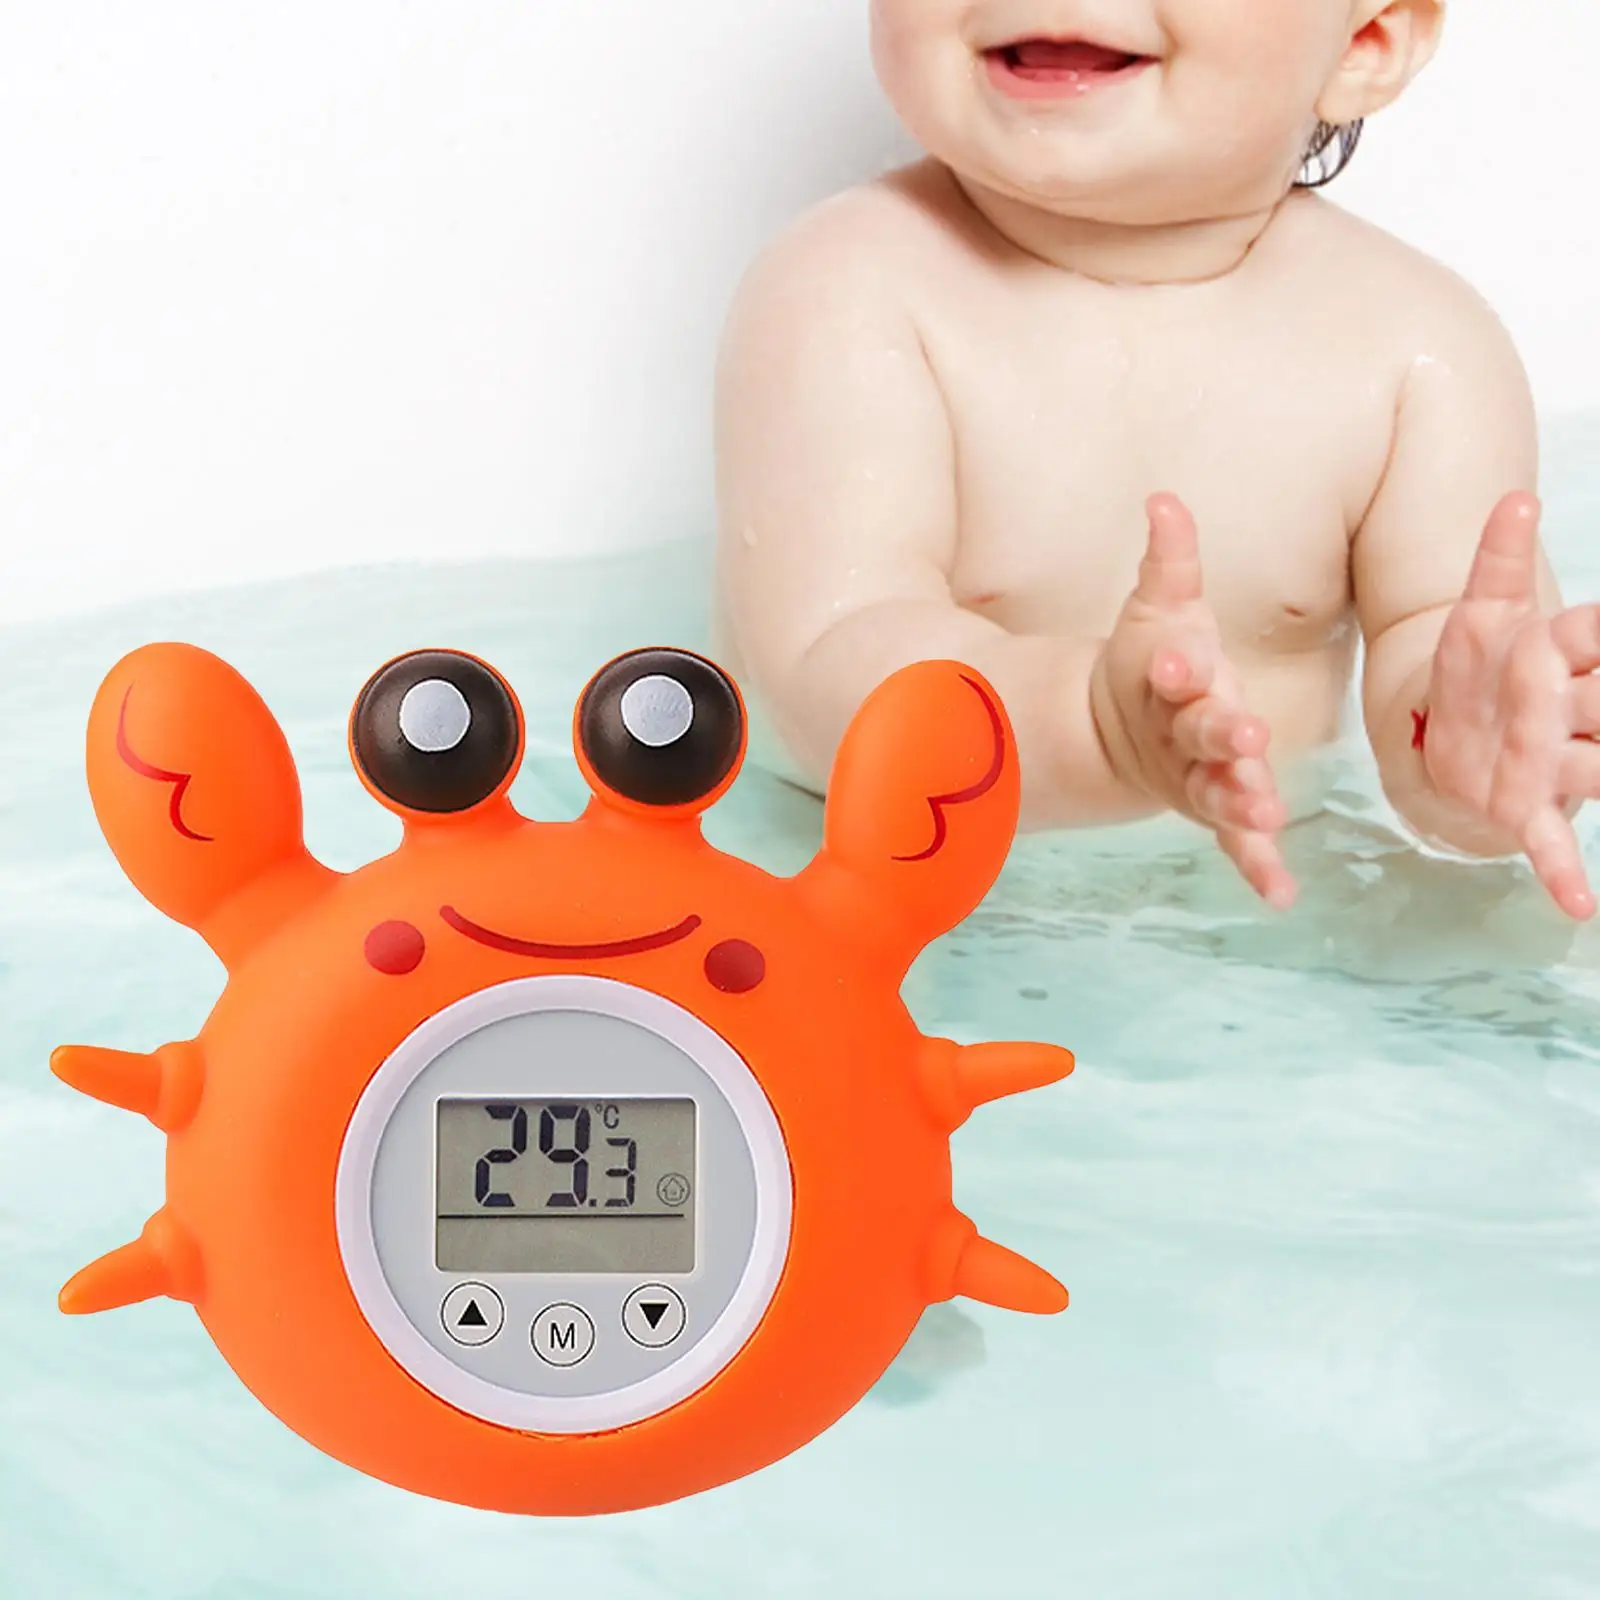 Temperature Measurement Toy Bath for Infant Bath Tub Shower Kids